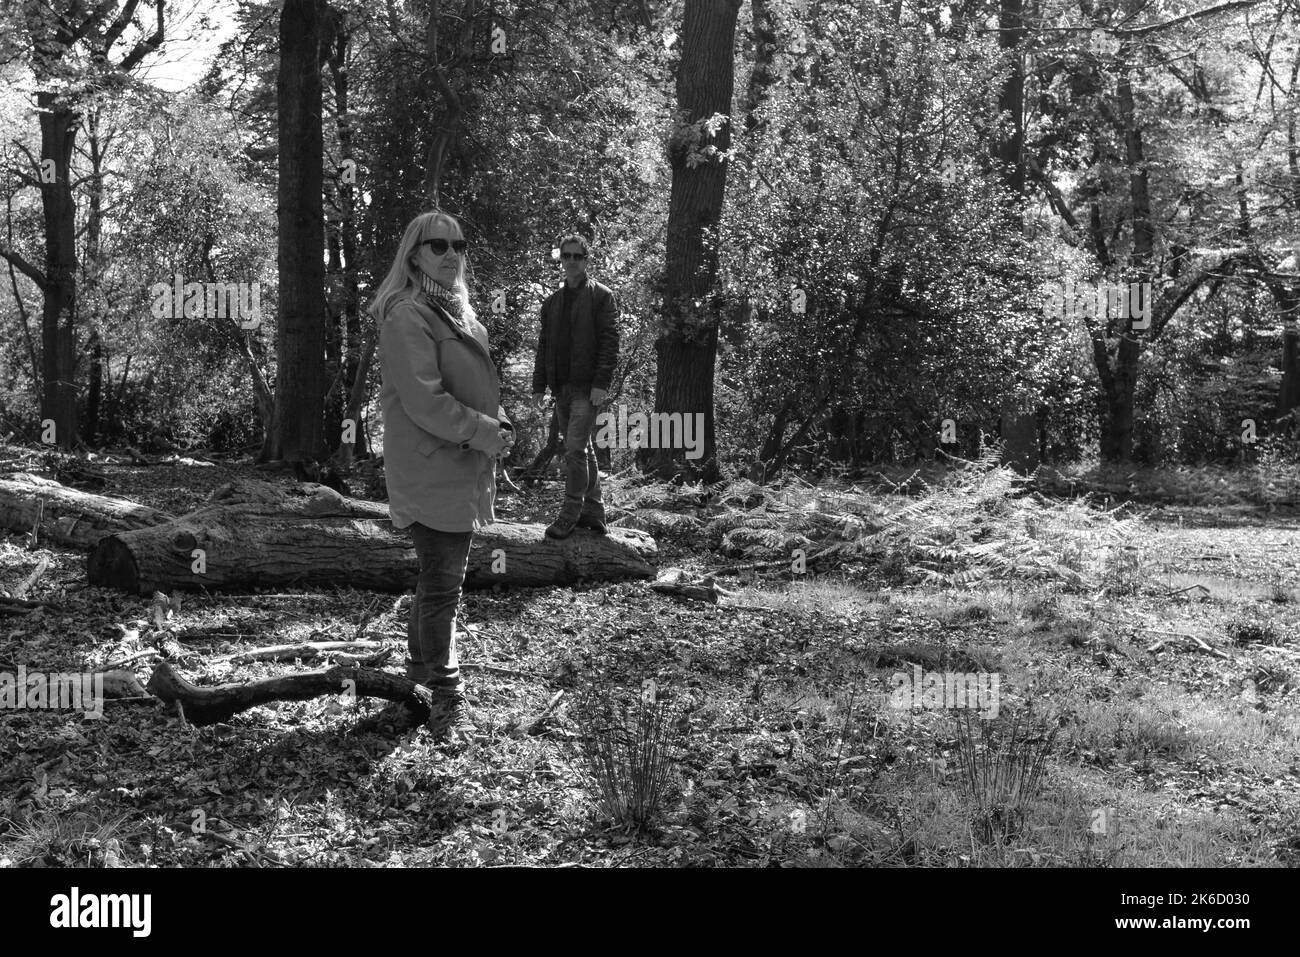 Paar, Frau und Mann, stehen in Wald oder Wald in gestaffelten Positionen und blicken mit Haltung auf die Kamera. Schwarz und Weiß. Stockfoto